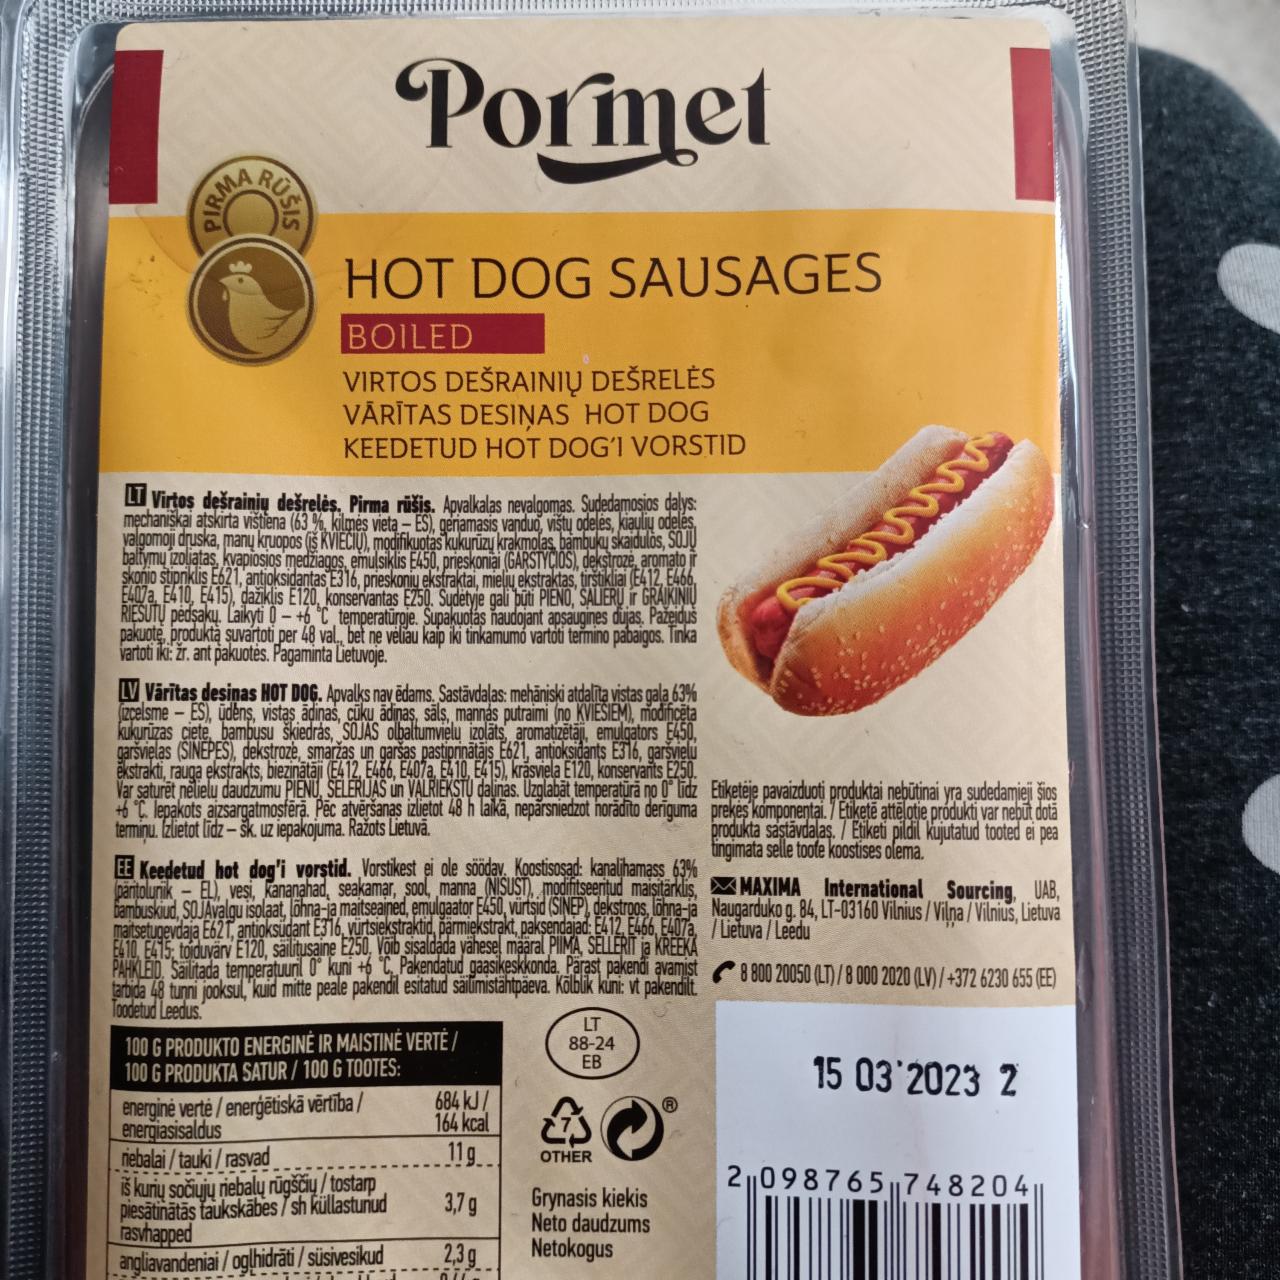 Фото - Сосиски для хот догу Hod Dog Sausages Pormet